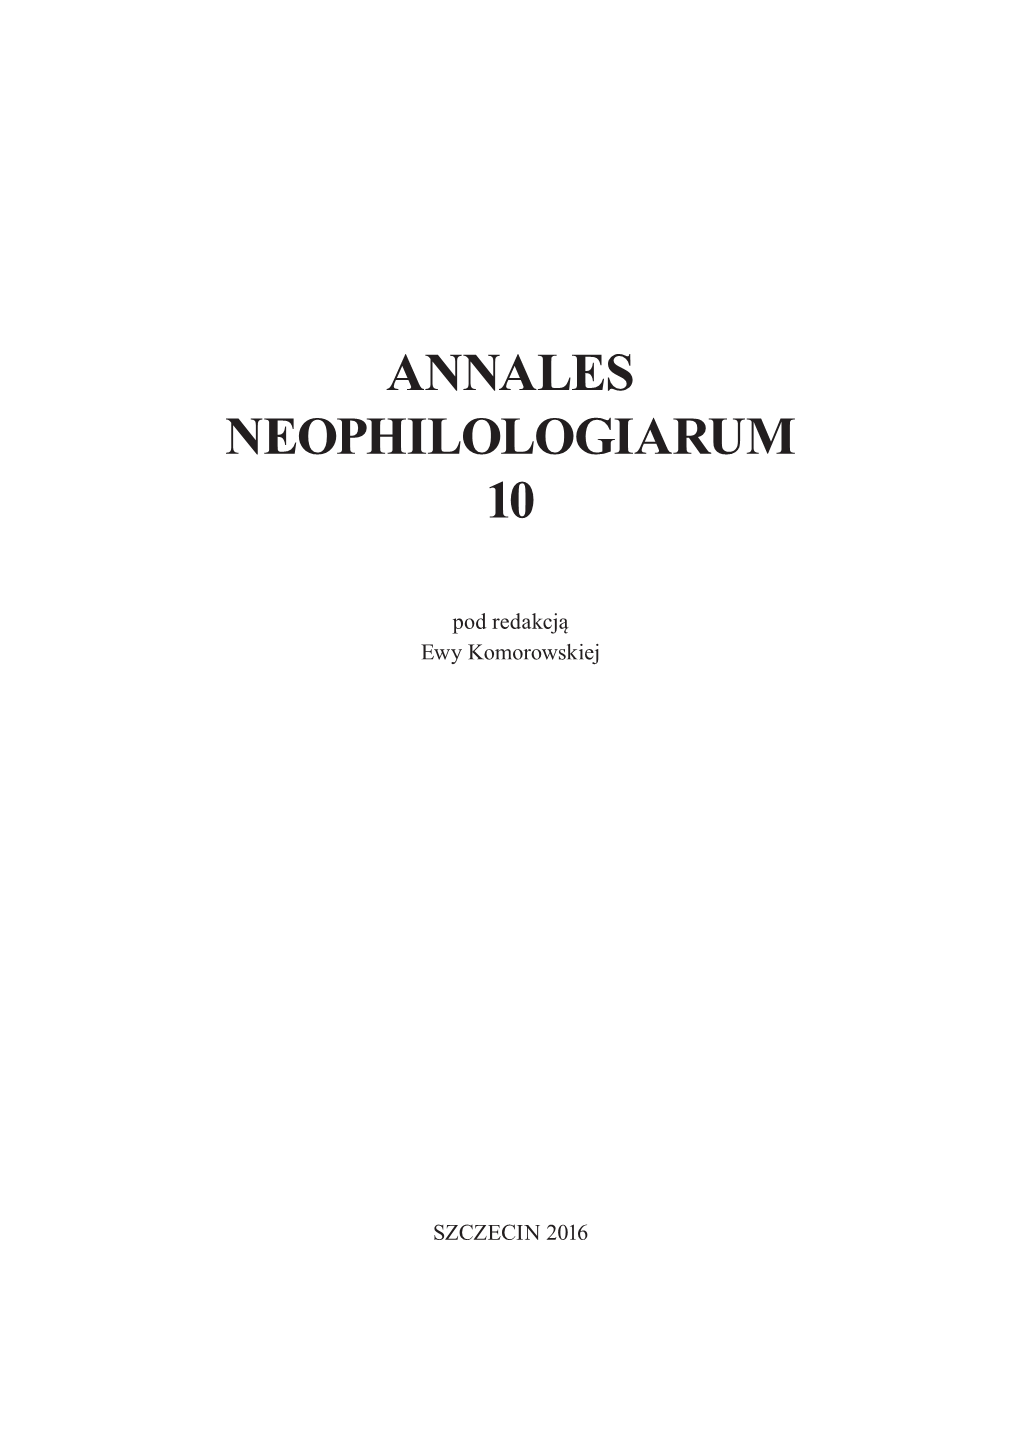 Annales Neophilologiarum 10